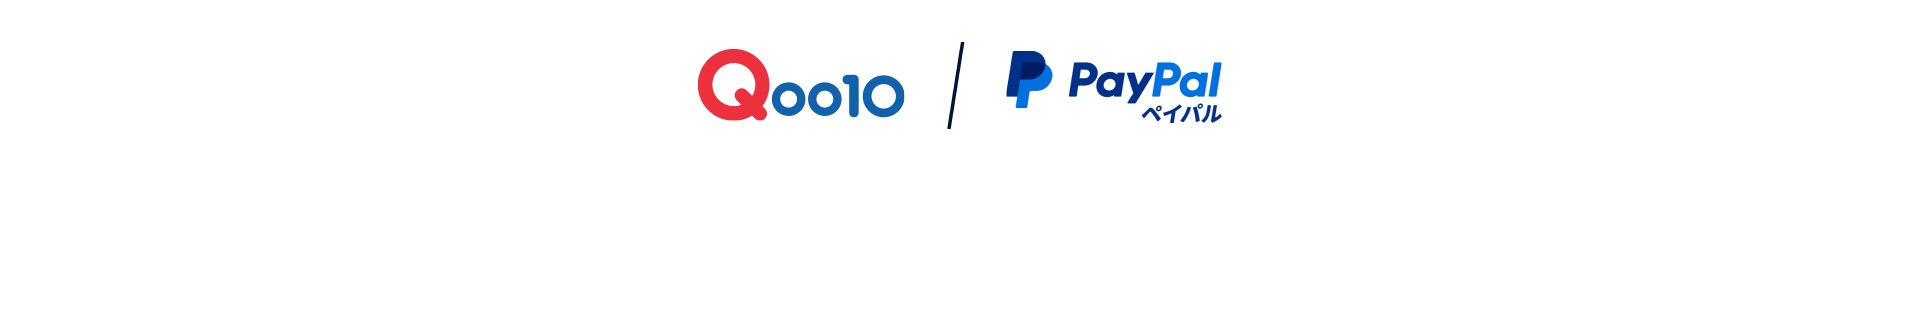 Qoo10 / Paypal